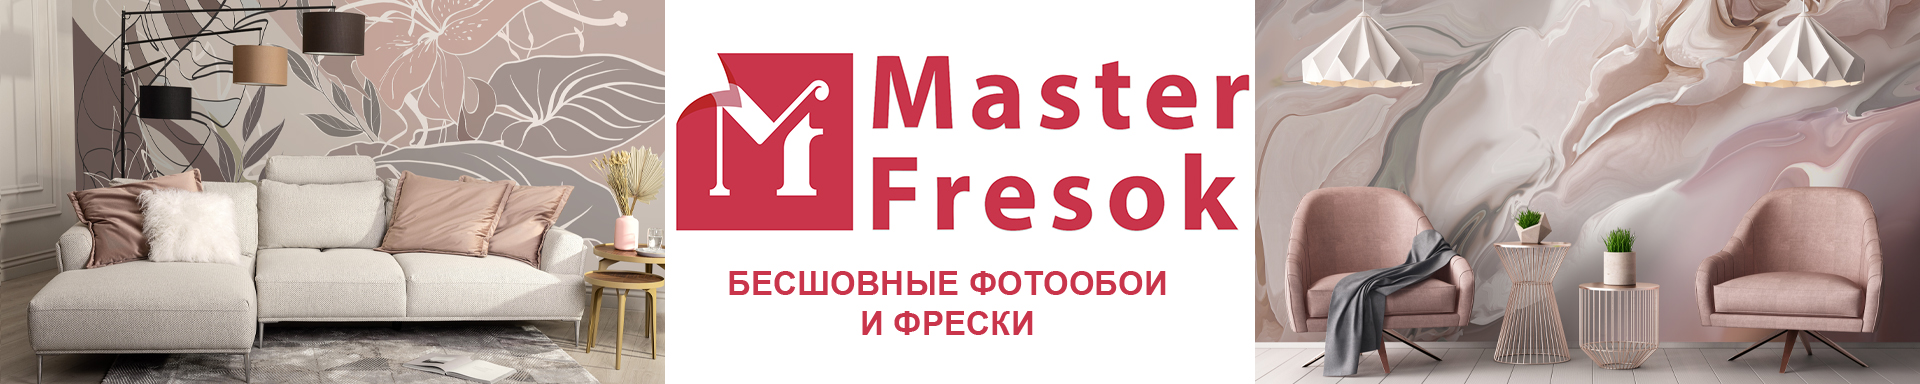 MasterFresok